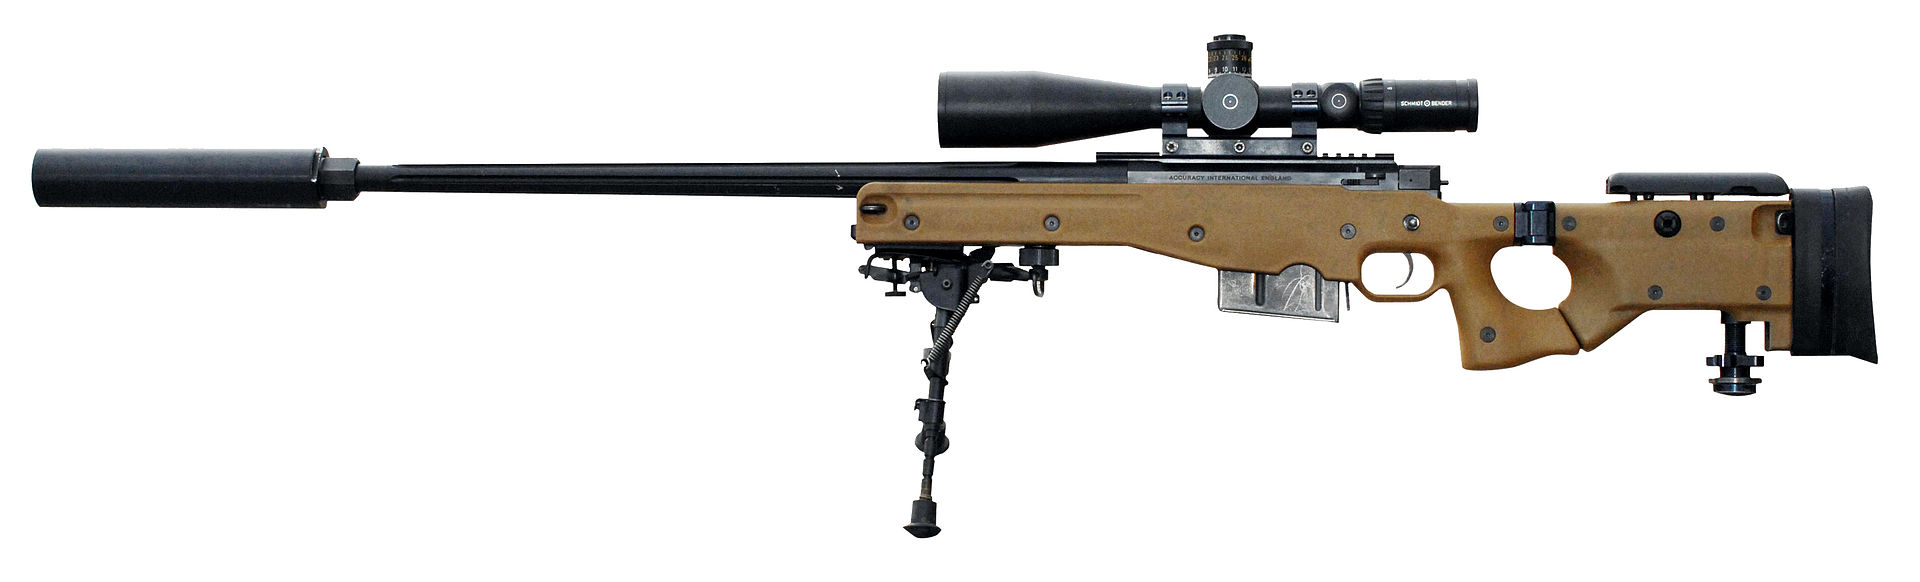 1920px-L115A3_sniper_rifle.jpg